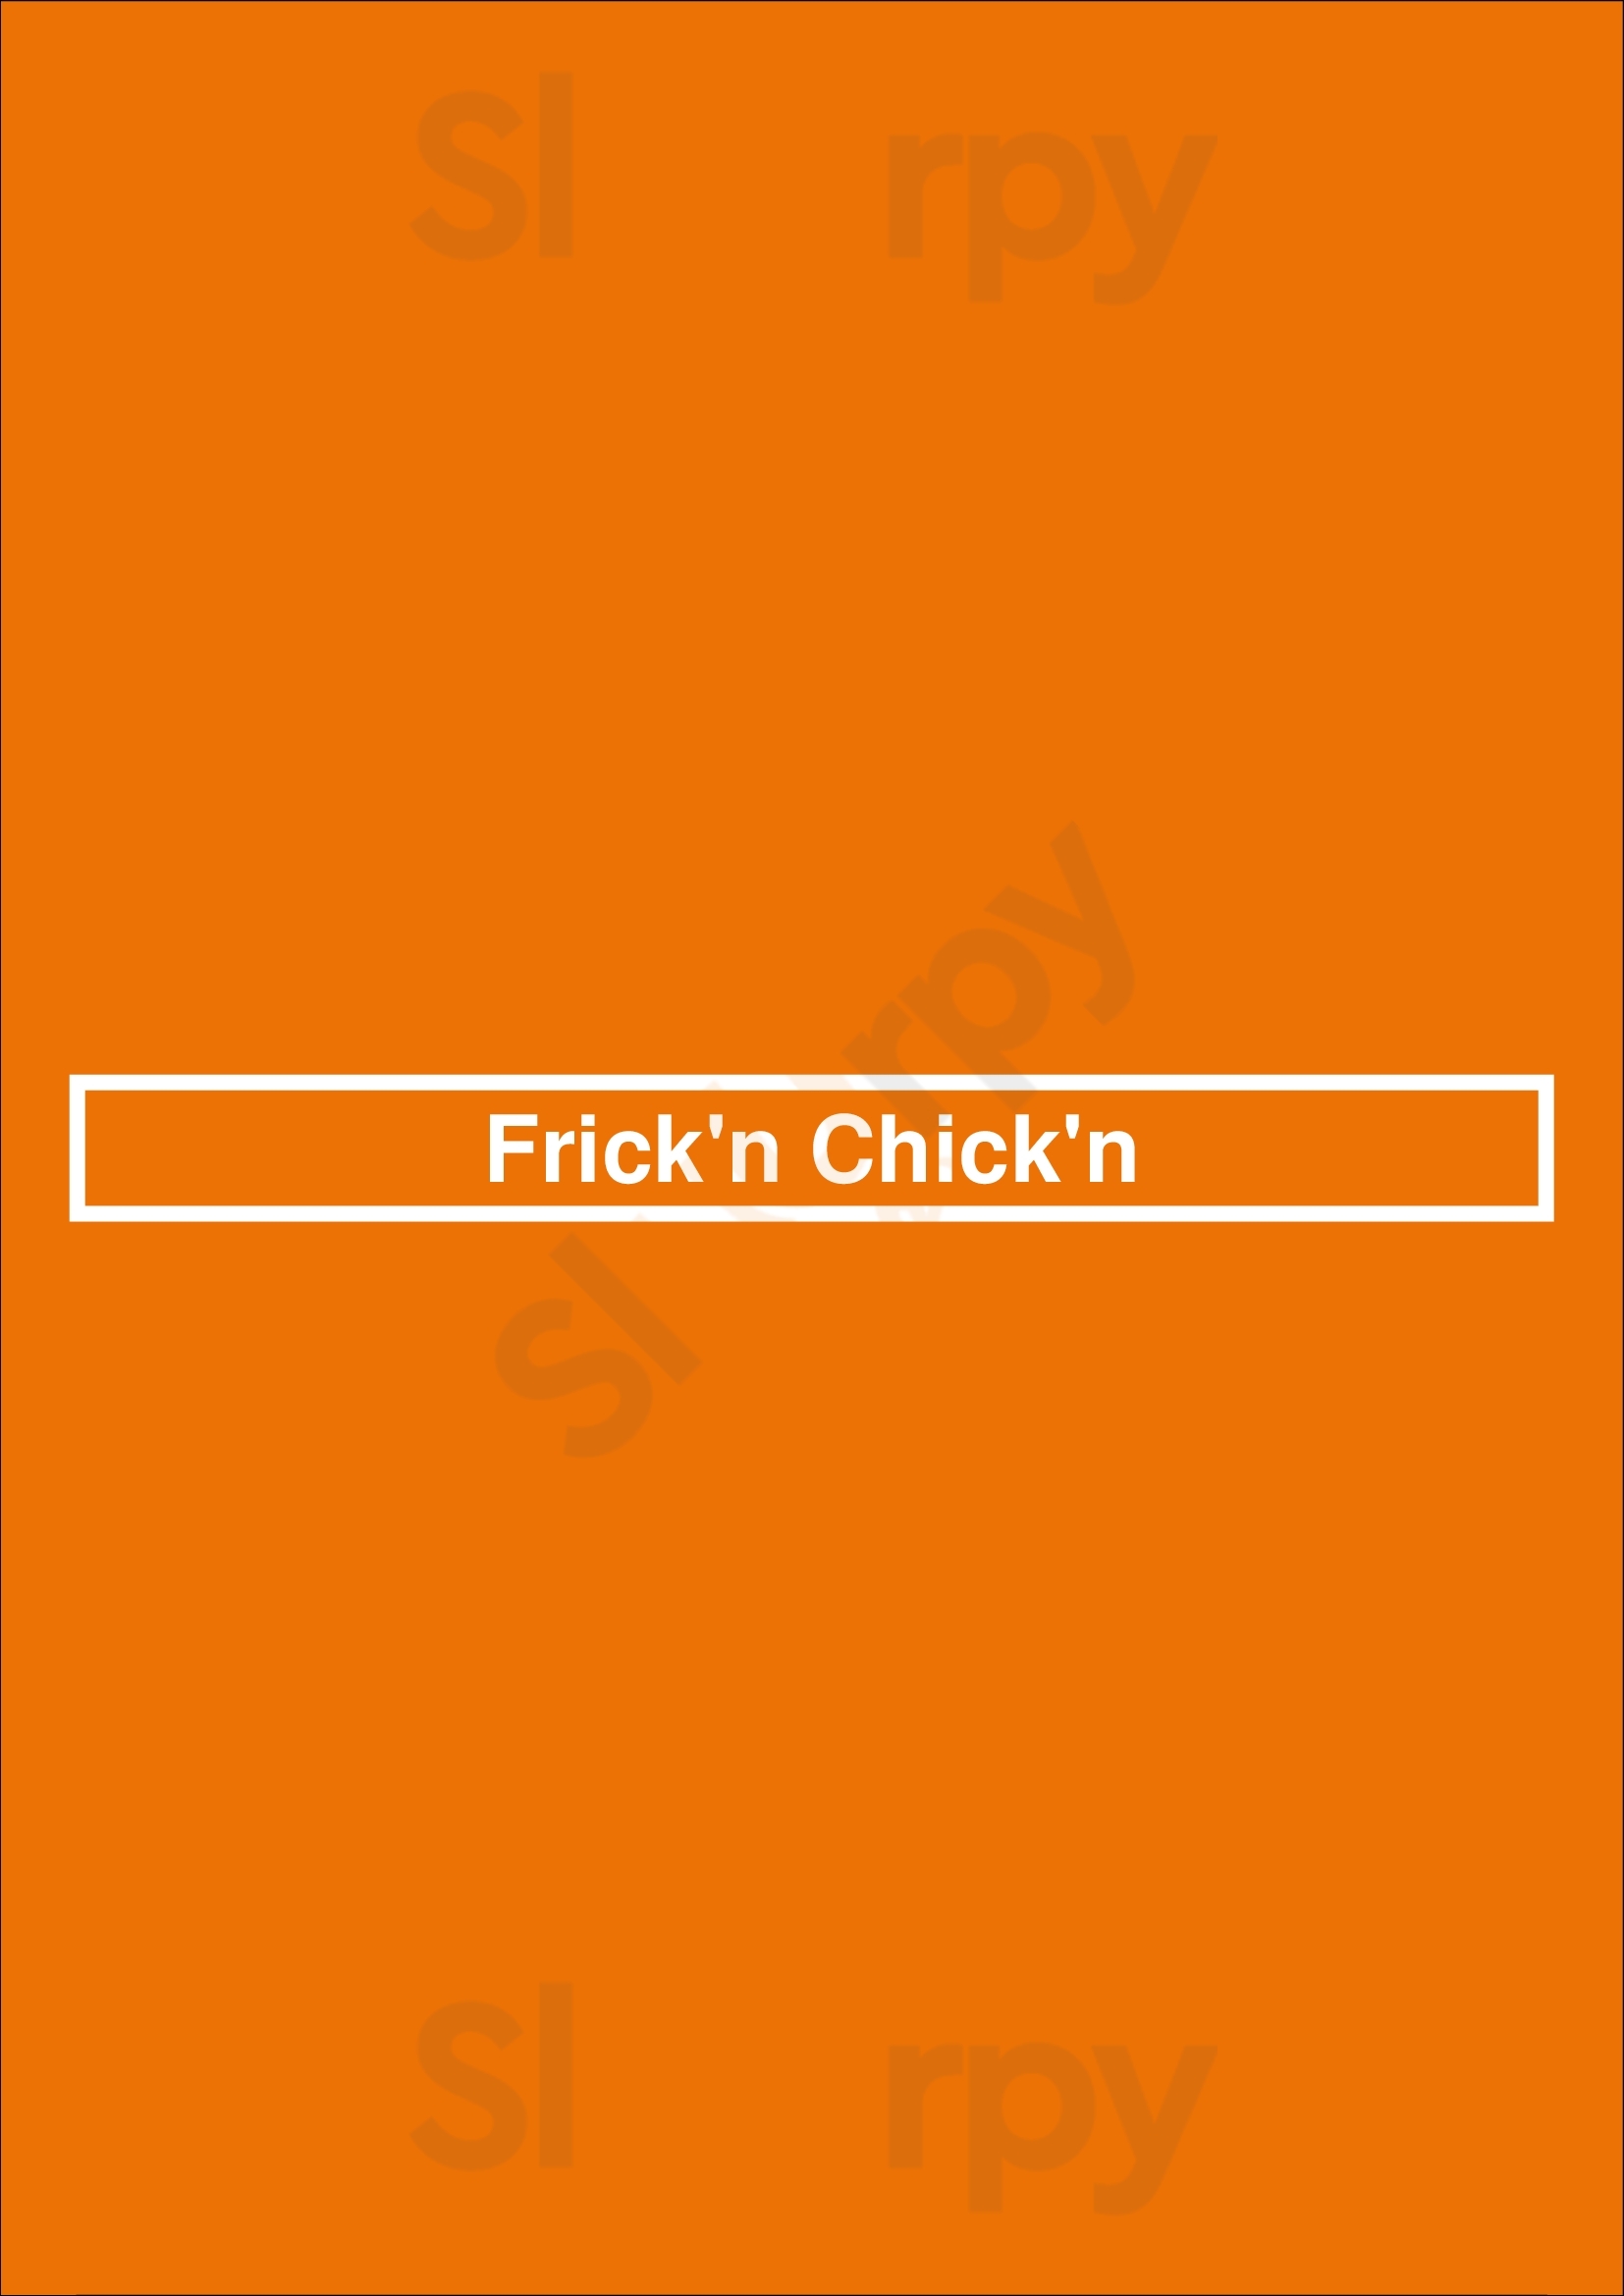 Frick'n Chick'n Edmonton Menu - 1